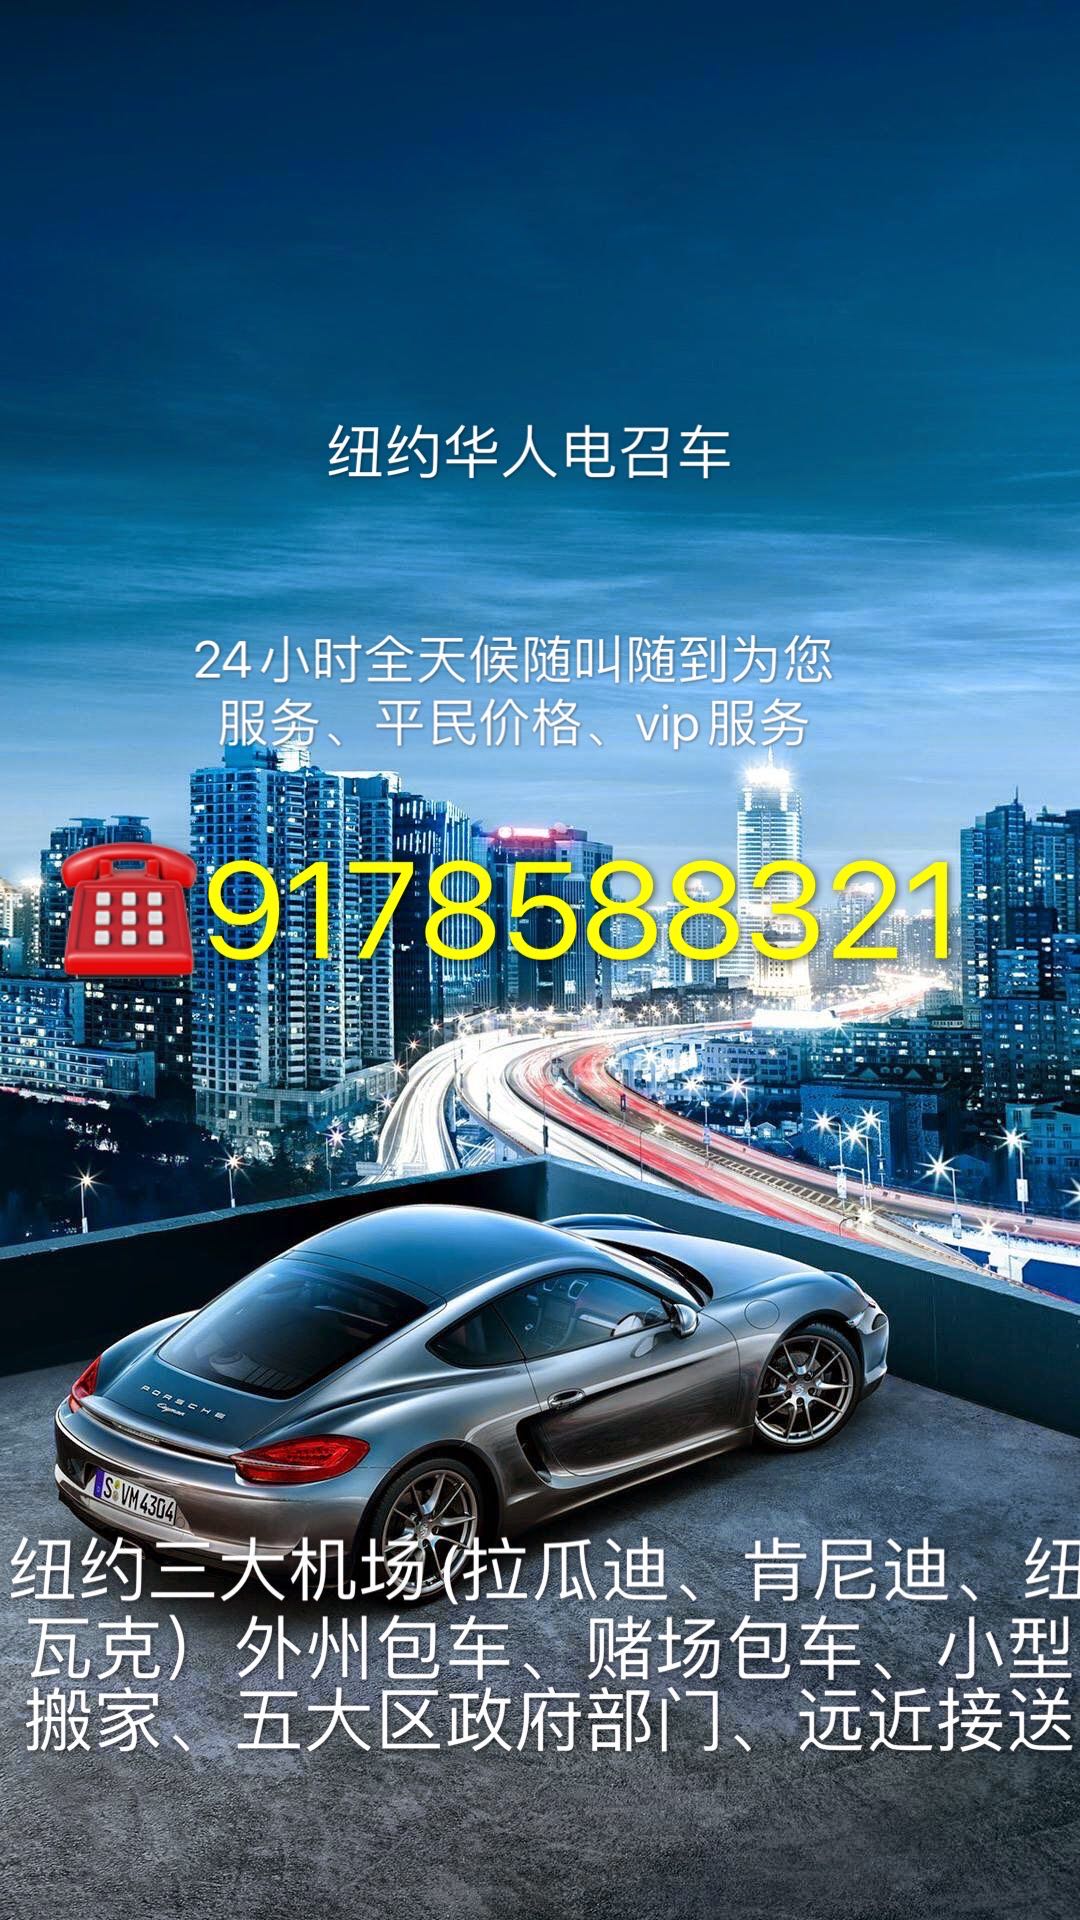 WeChat Image_20200904125709.jpg